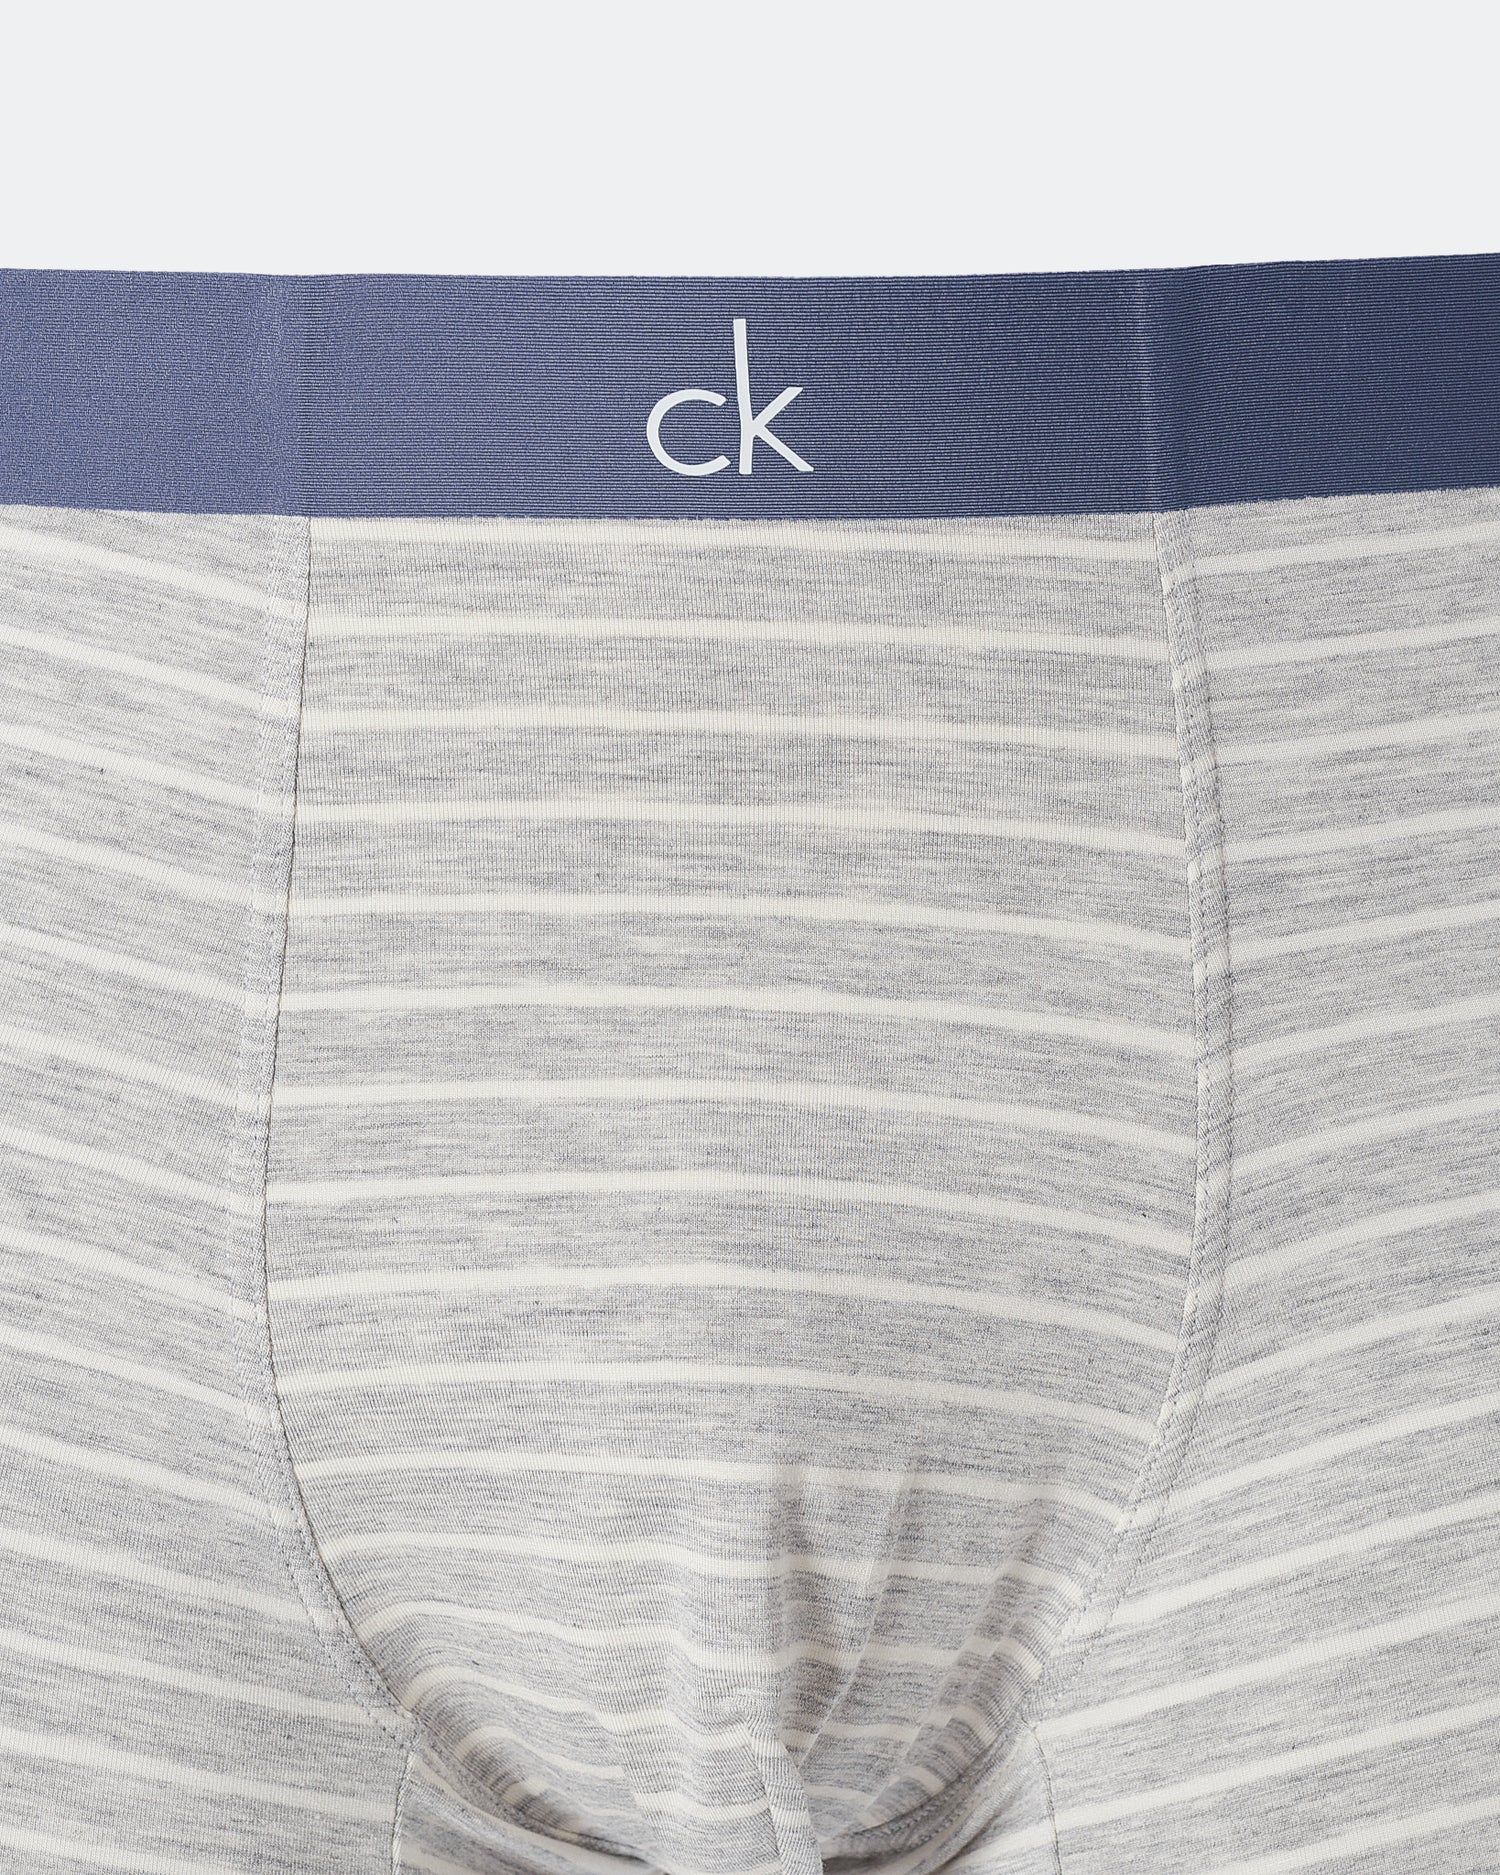 CK Striped Men Grey Underwear 6.90